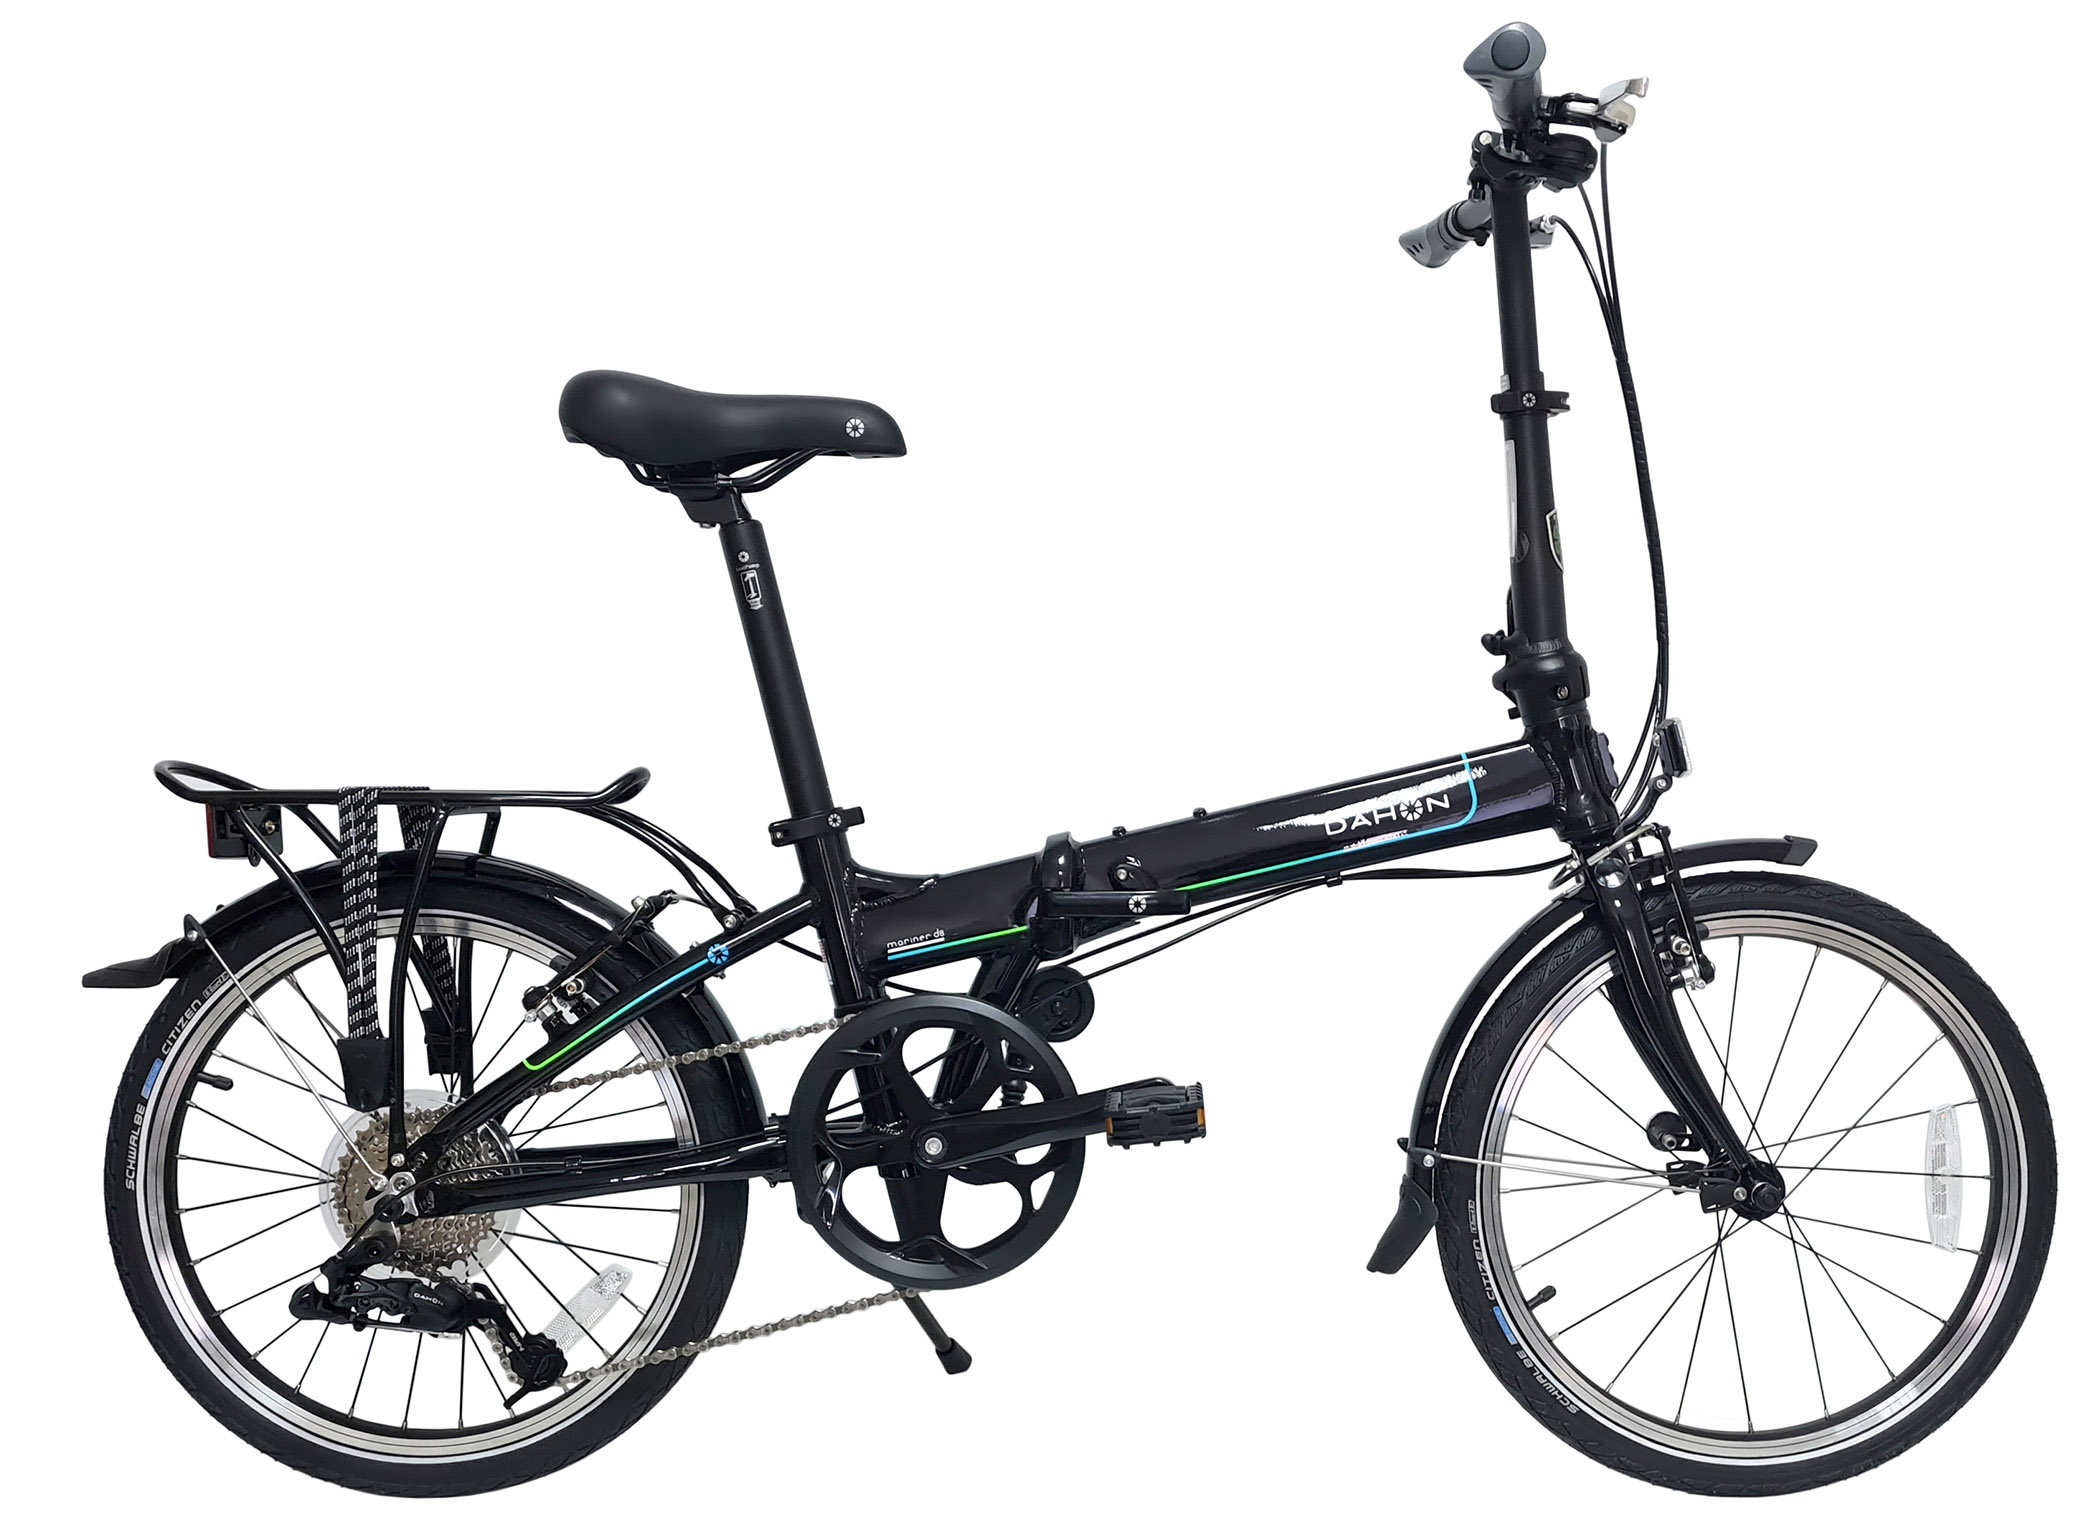  Складной велосипед Dahon Mariner D8 (2021) 2021